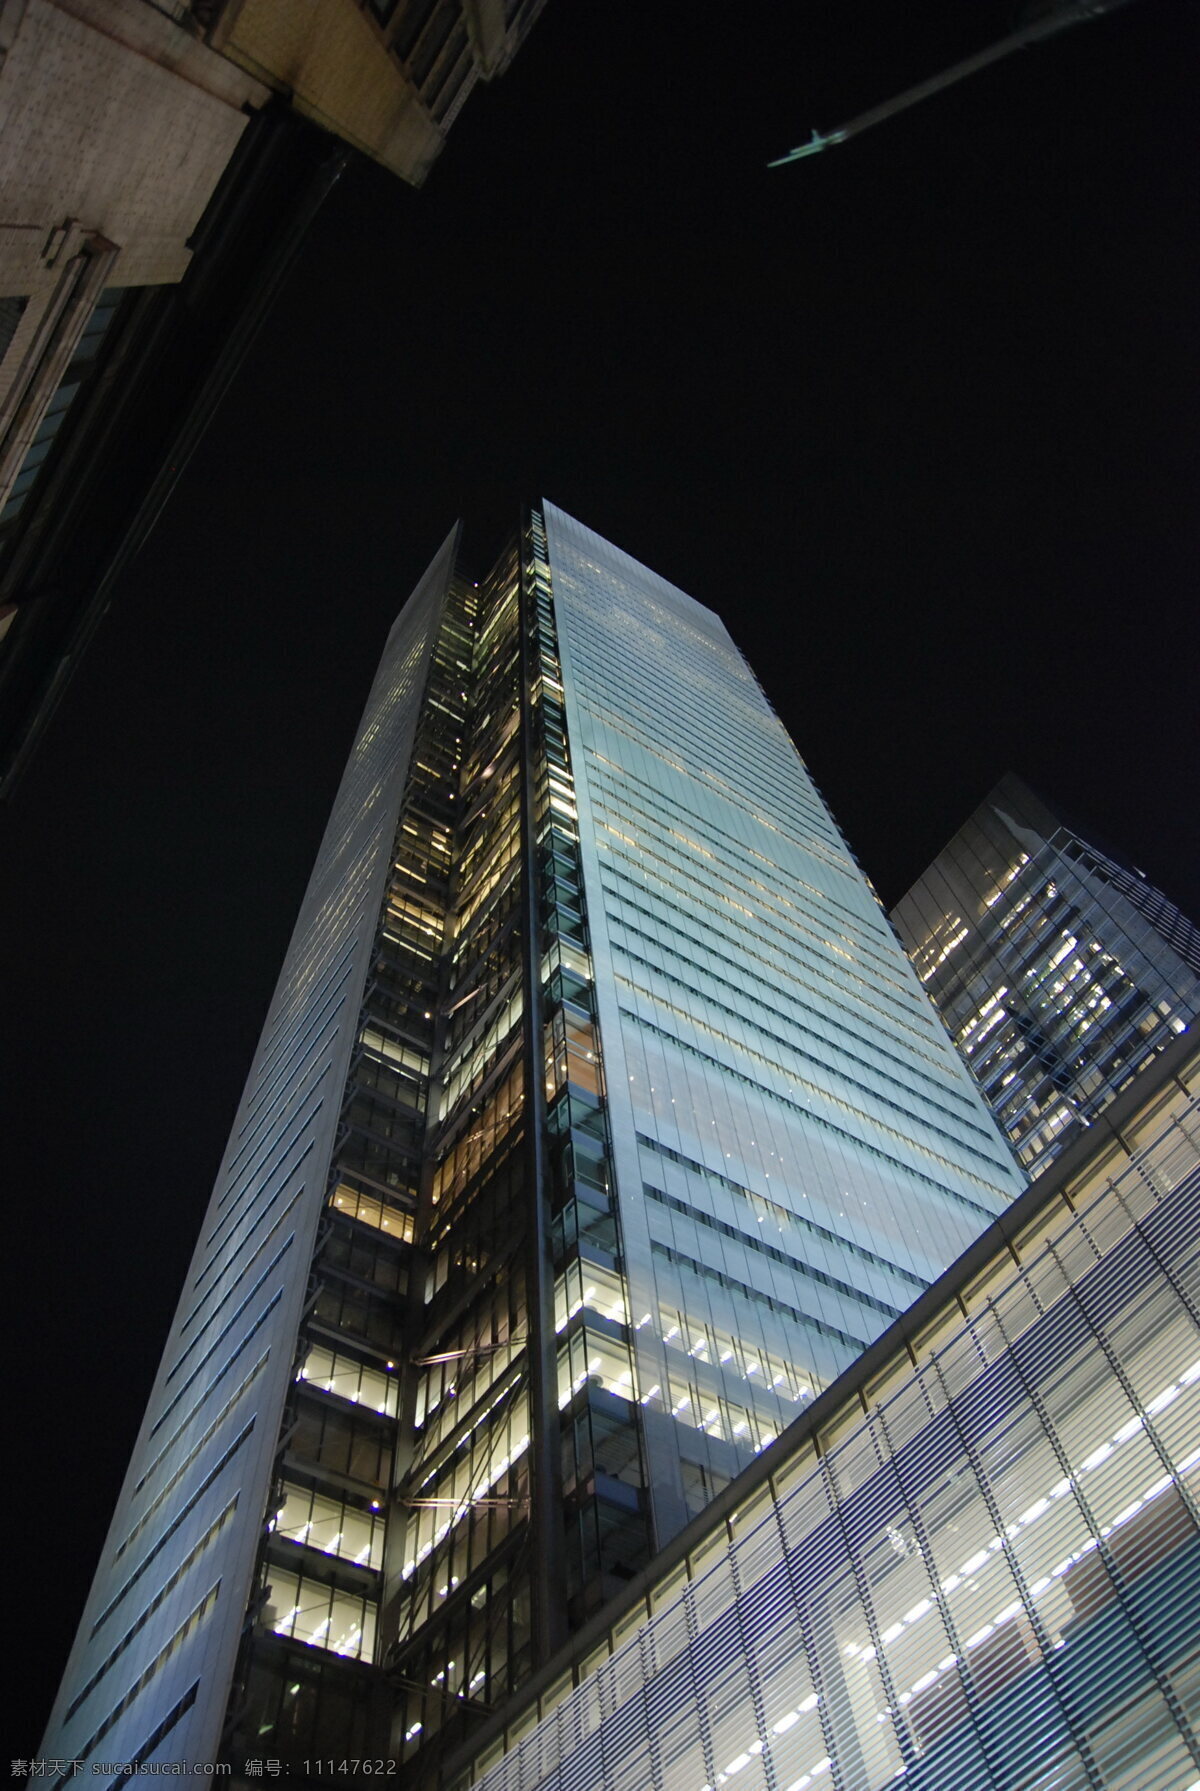 纽约时报大厦 美国 纽约 曼哈顿 建筑 街景 高层 大厦 大楼 玻璃幕墙 高技派 皮亚诺 罗杰斯 美利坚东岸 国外旅游 旅游摄影